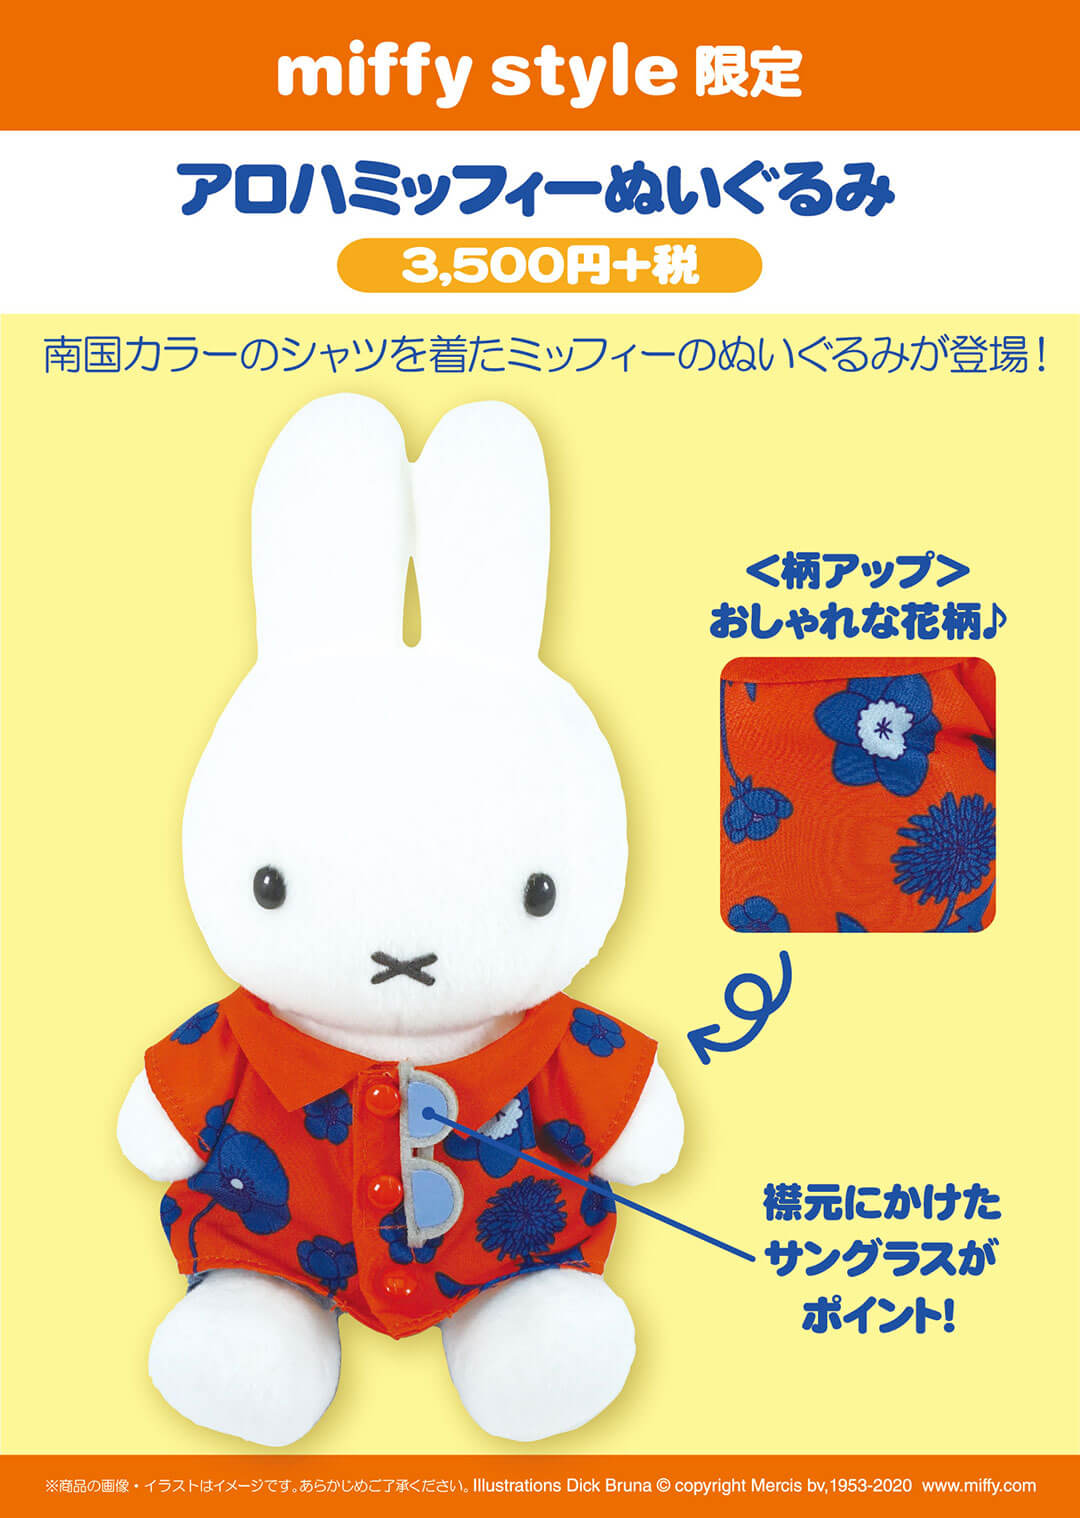 6月13日（土）発売予定!miffy style限定 アロハぬいぐるみ&雑貨&扇子 